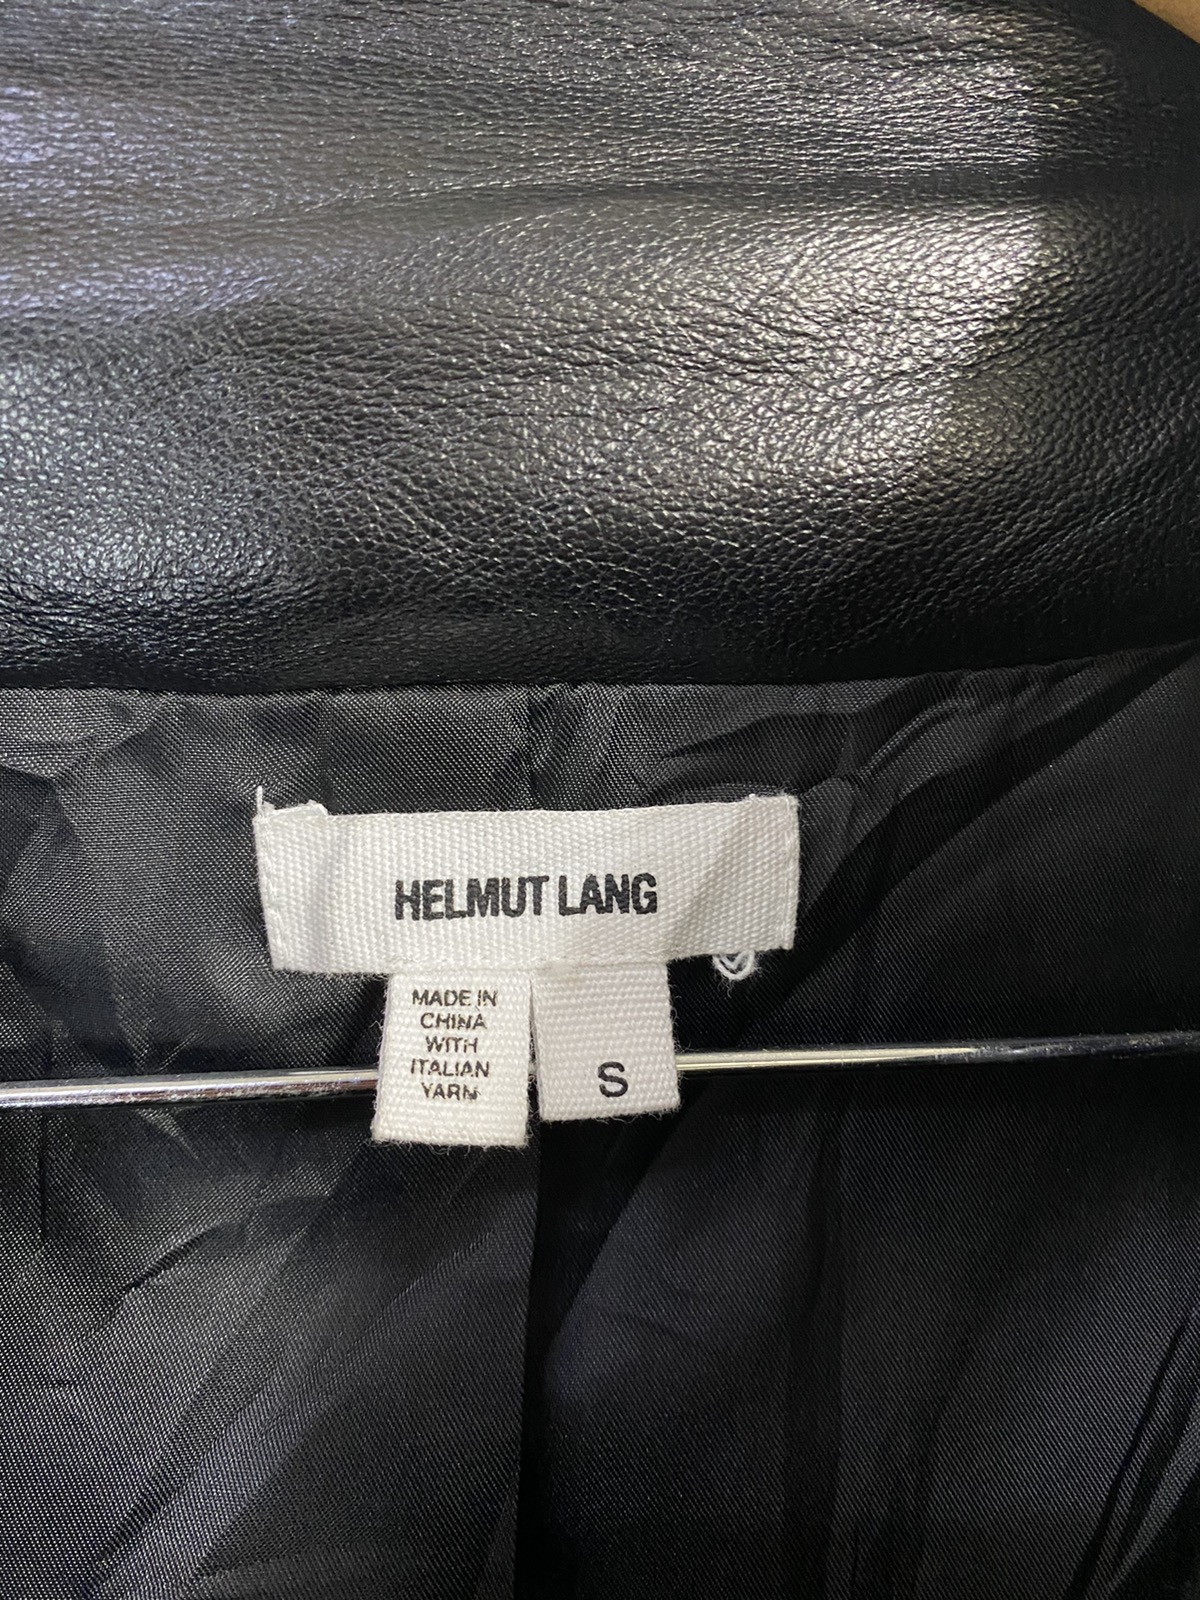 Helmut lang hybrid Leather Jacket Rare Design - 3